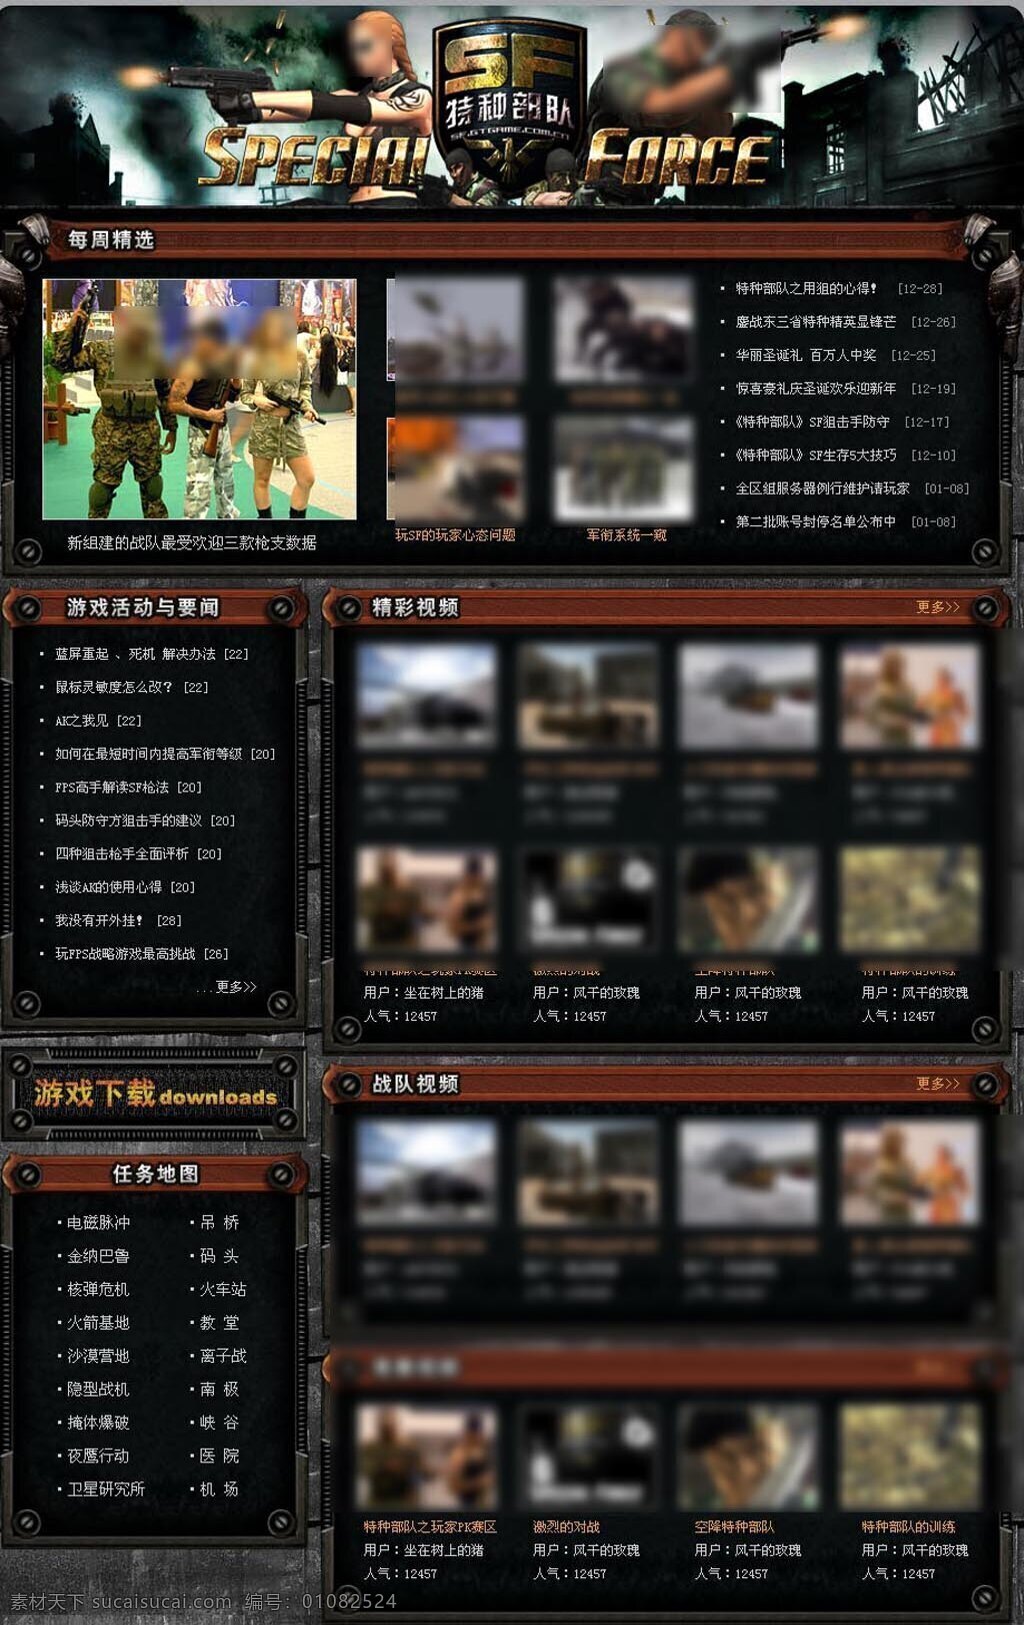 特种部队 游戏 专题 游戏专题 网页 游戏网站 中文模版 网页模板 源文件